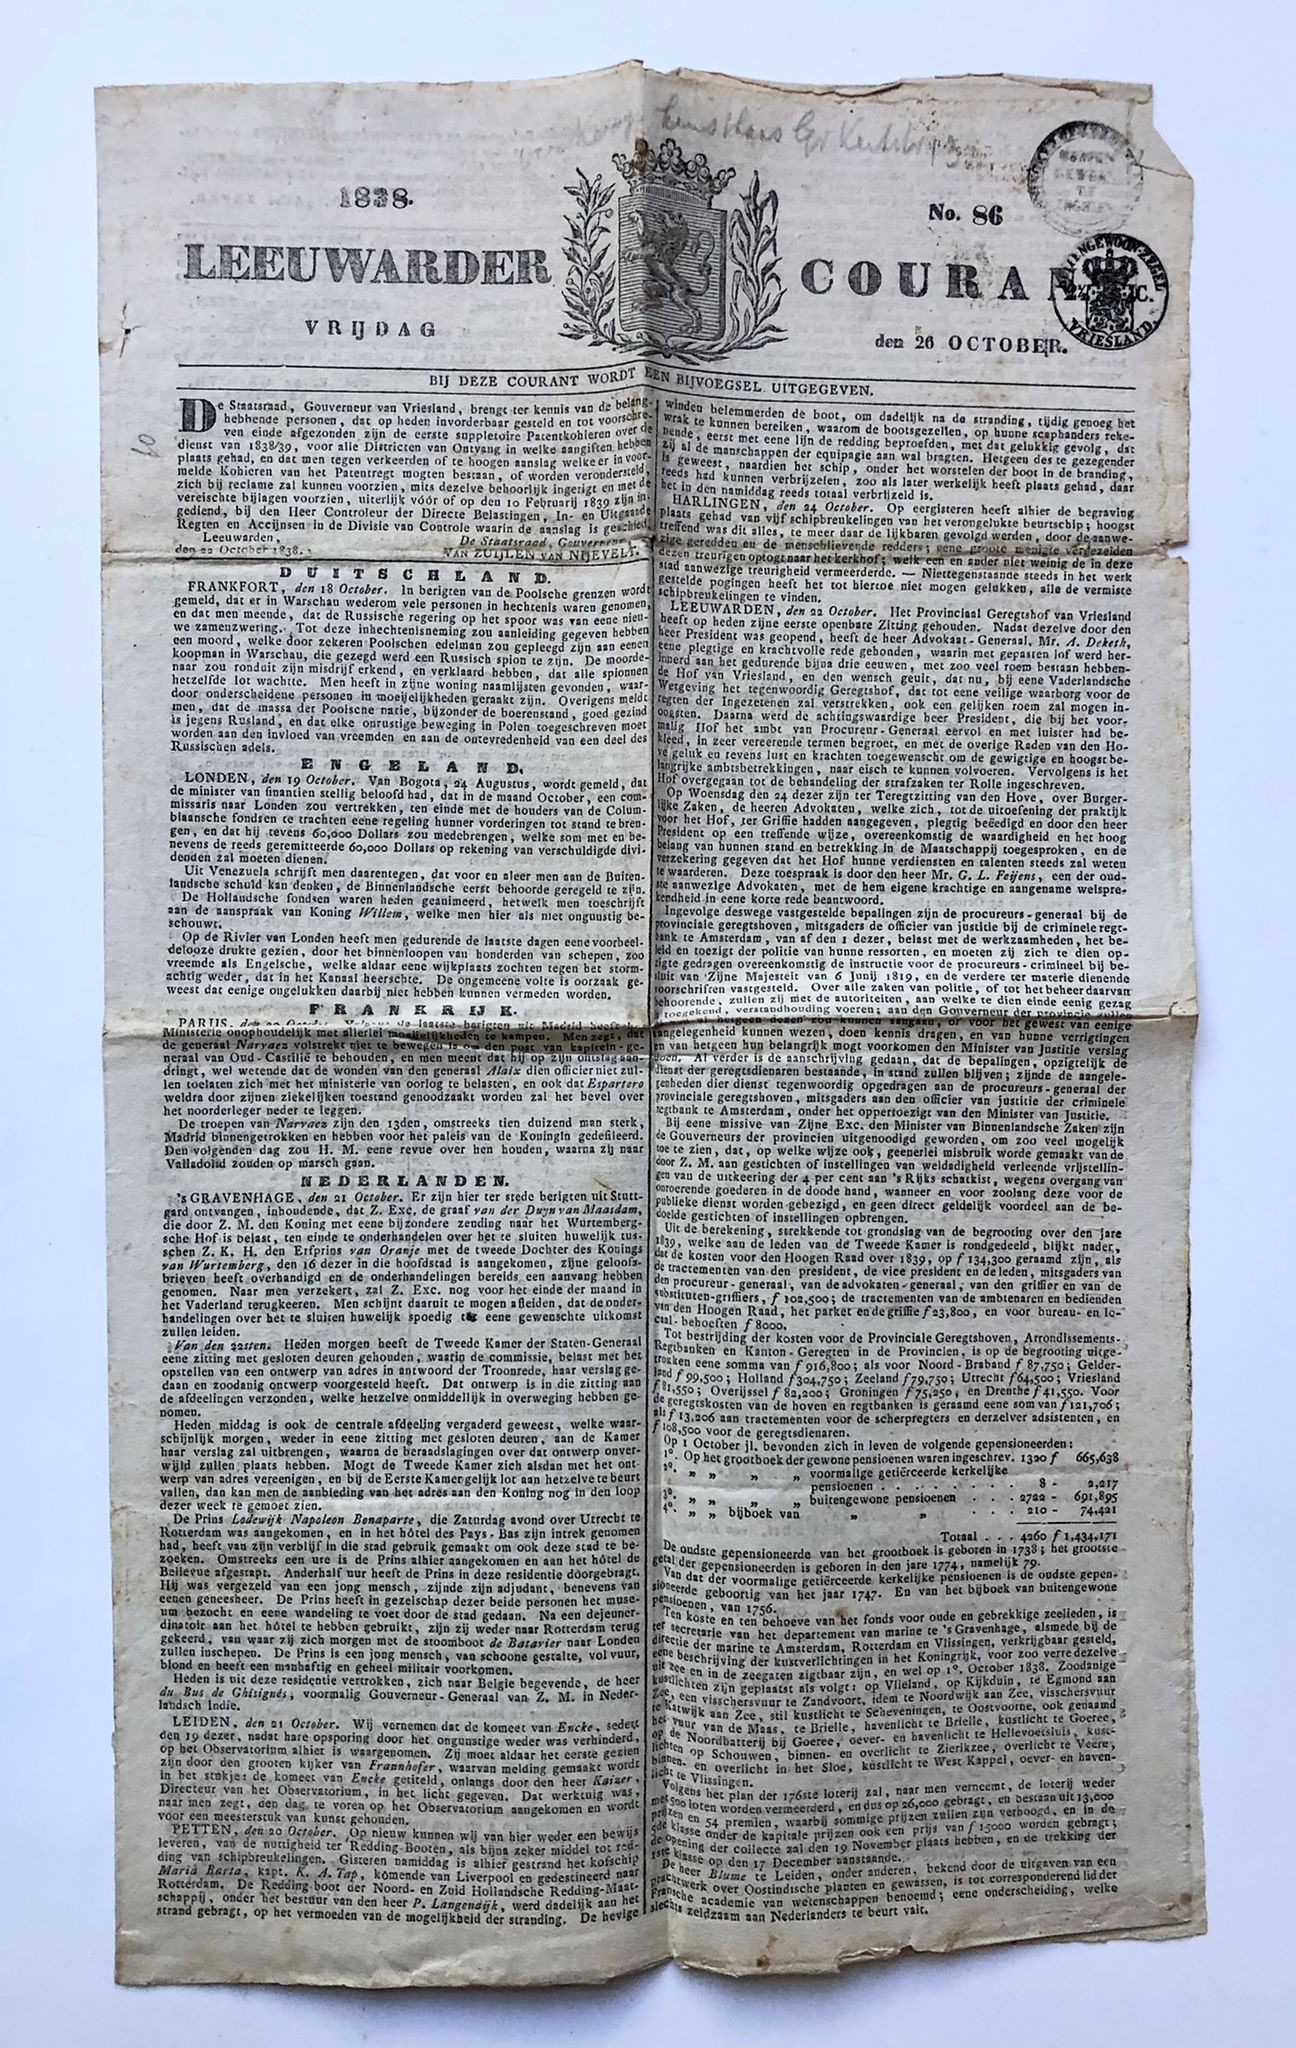 [Newspaper, Leeuwarden, Friesland 1838] Exemplaar van Leeuwarder Courant 26-10-1838, plano, 6 pag., printed.